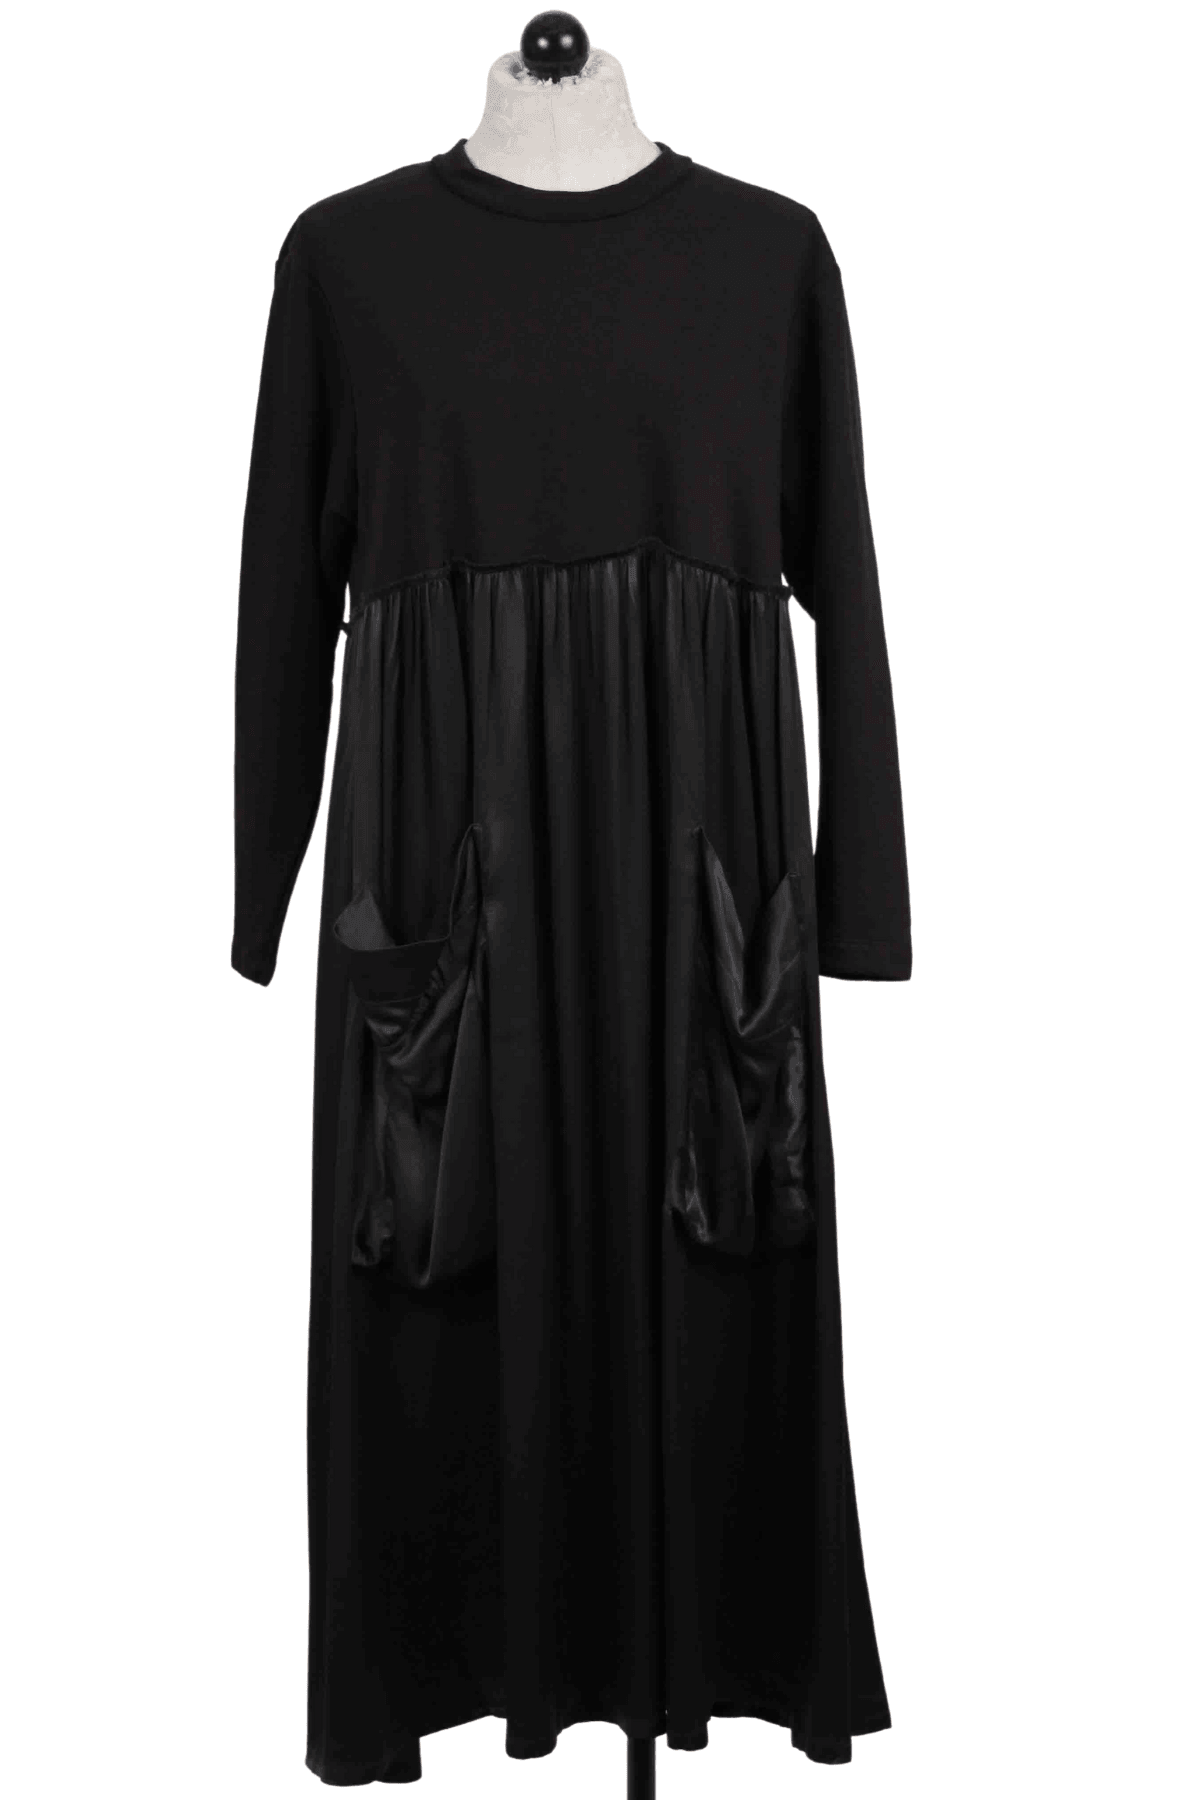 black Long Sleeve Satin Bottom Dress by Alembika